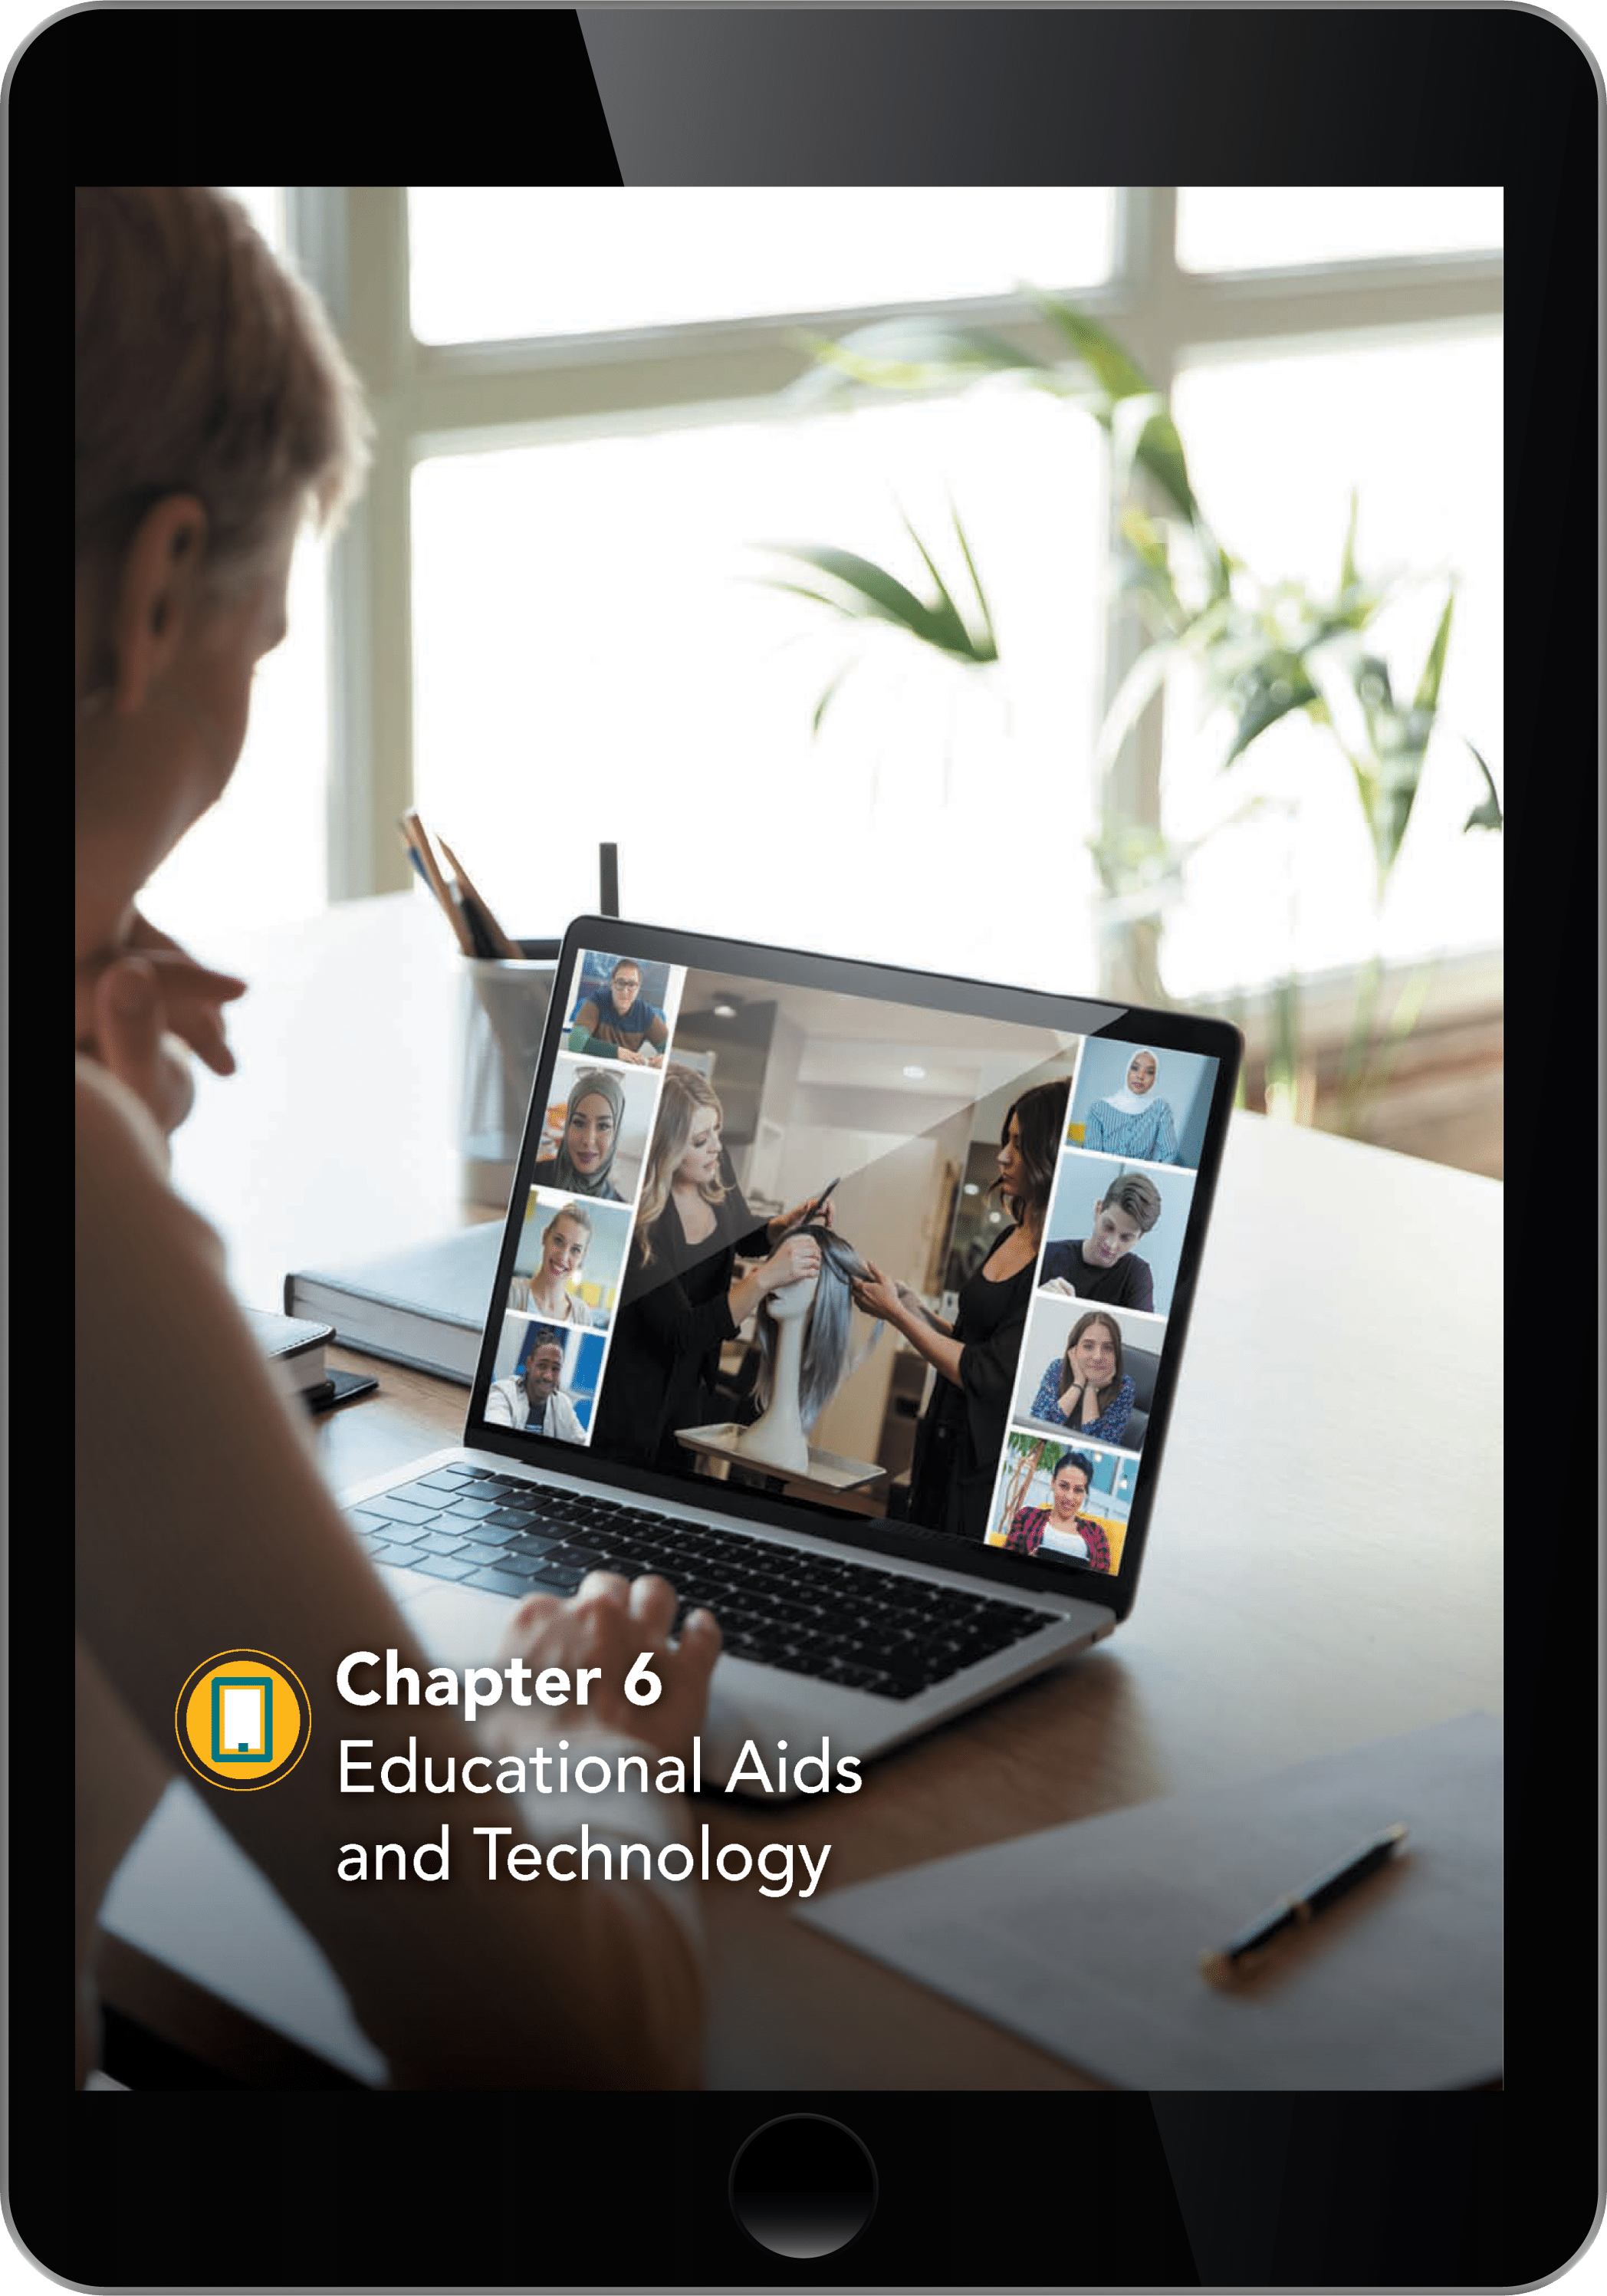 Chapter 6 Opener on iPad